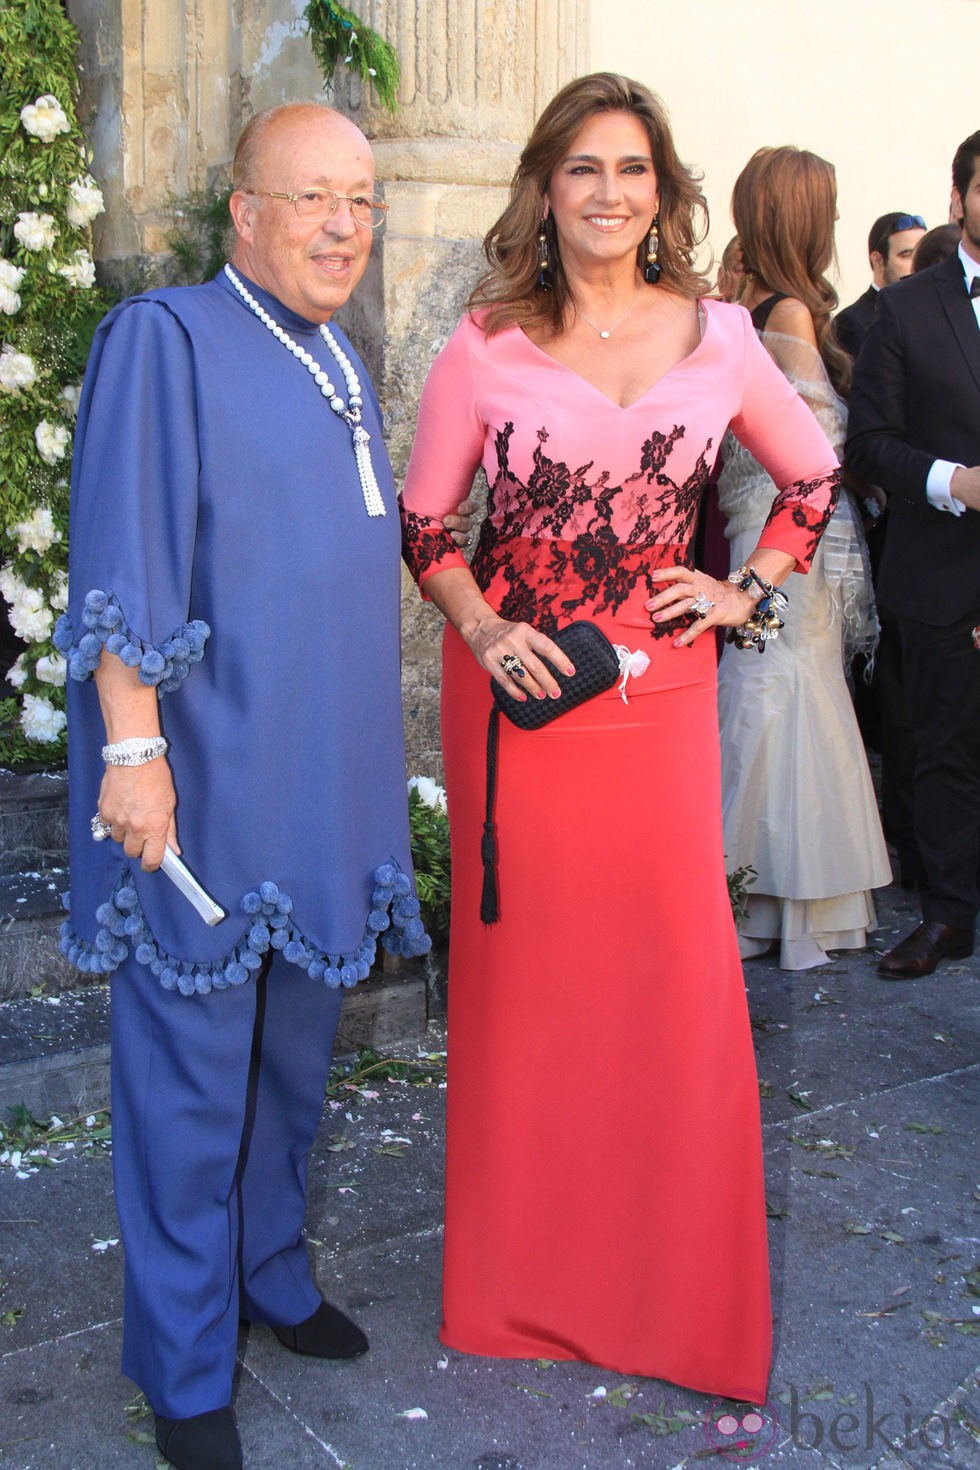 Rappel y Marina Danko en la boda de Verónica Cuevas y Manuel del Pino